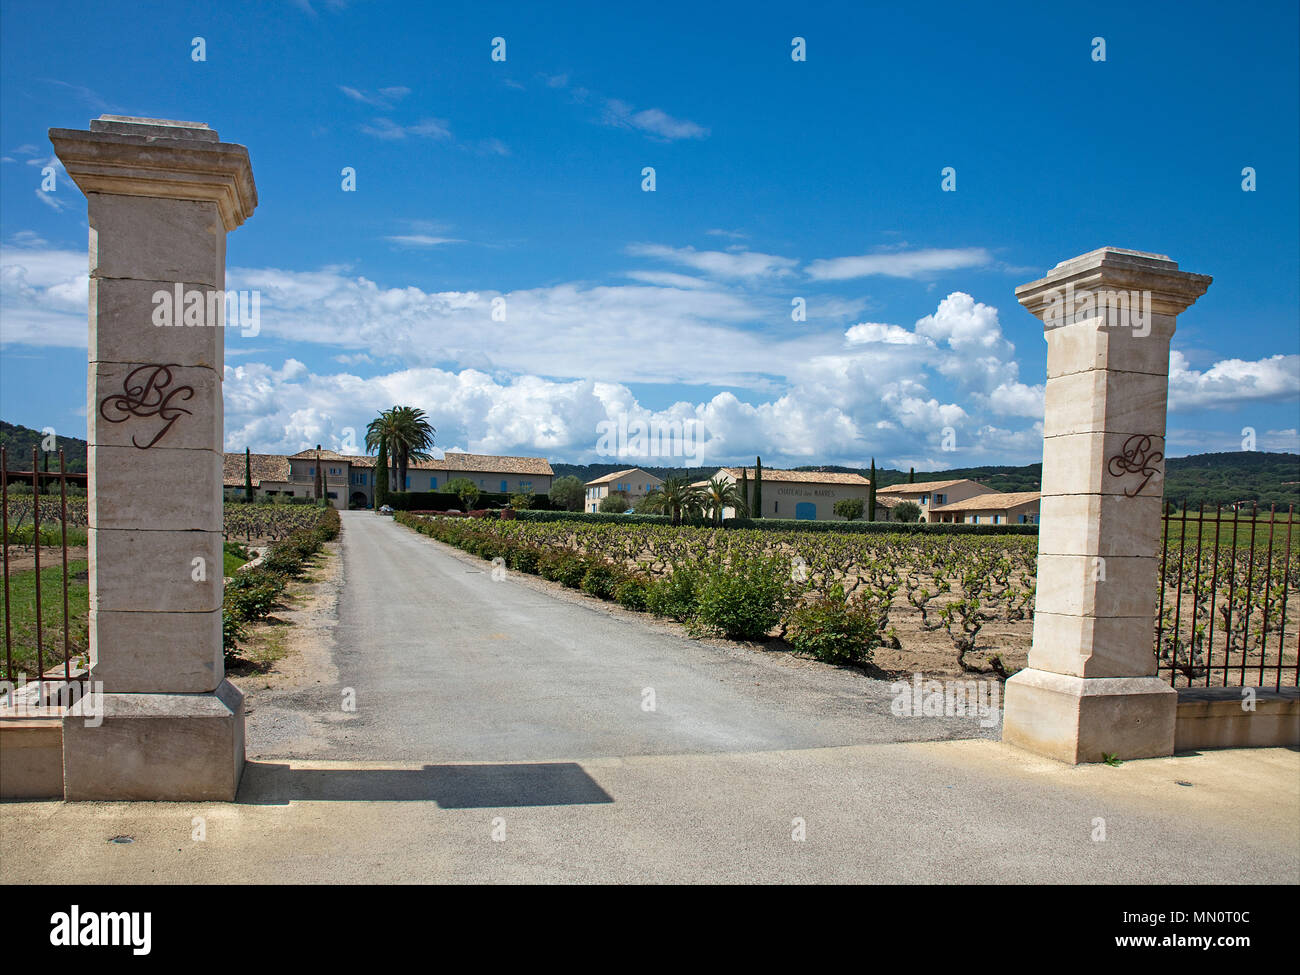 Entrance to vineyard 'Chateau des Marres' at Ramatuelle, Cote d'Azur, Département Var, Provence-Alpes-Côte d’Azur, South France, France, Europe Stock Photo